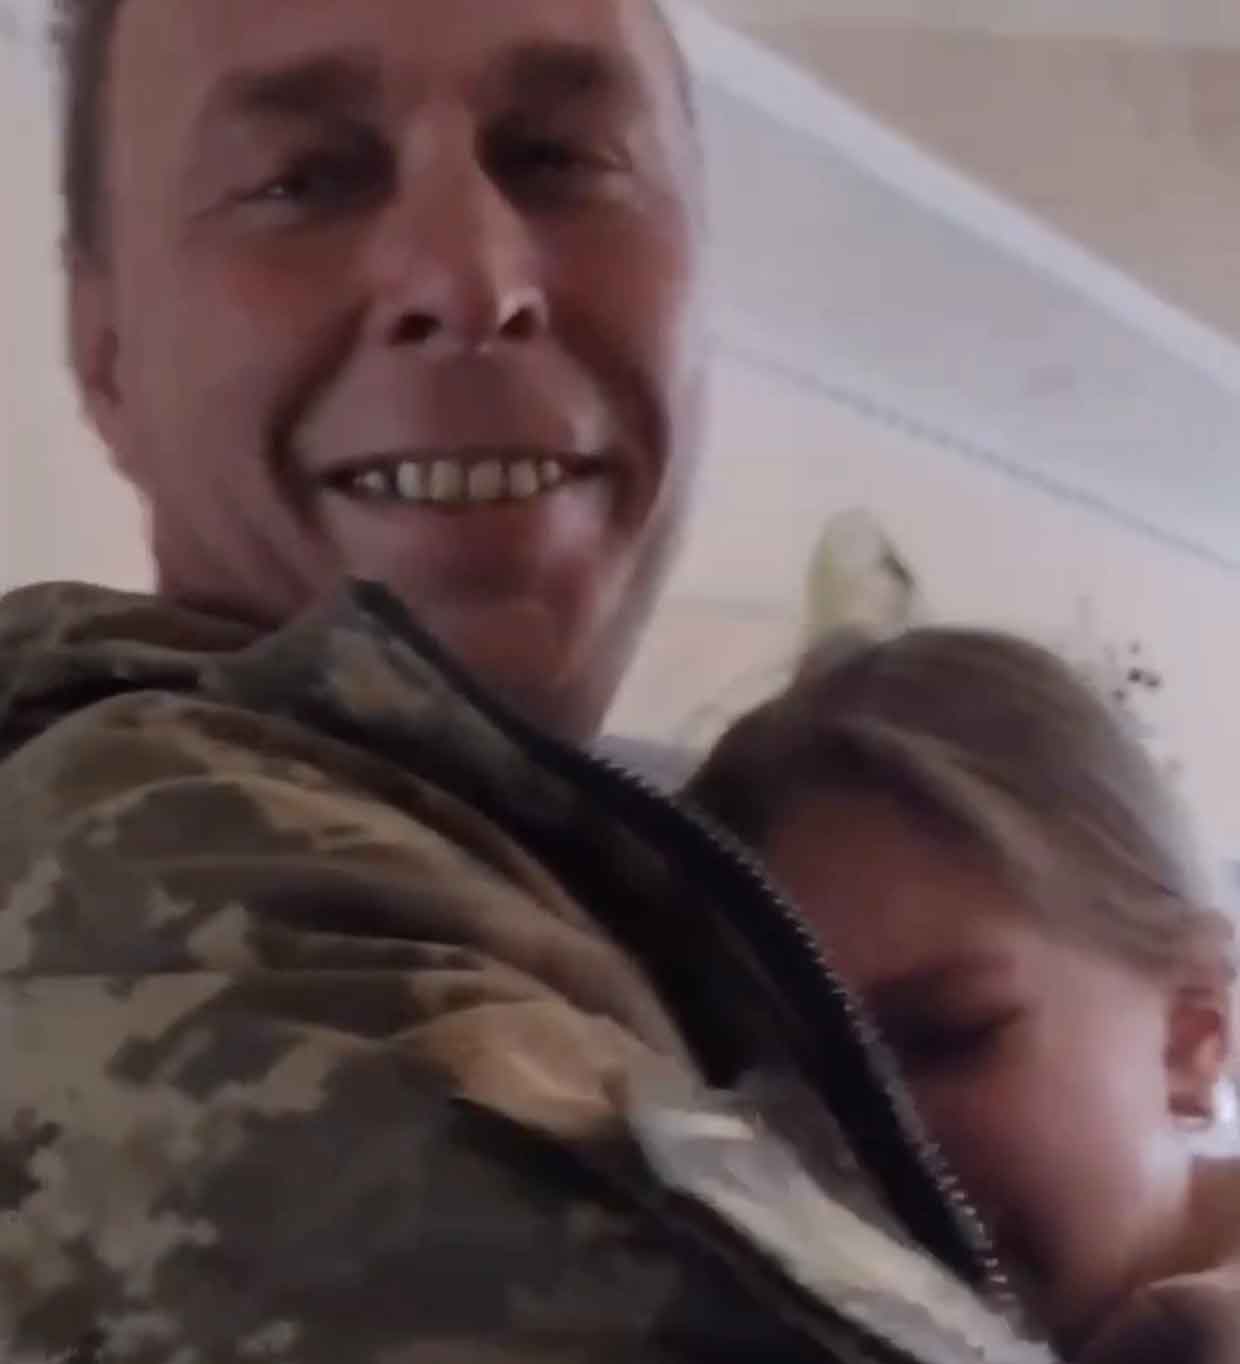 ทหารยูเครนเพิ่งกลับจากแนวหน้า เขามารับลูกสาวจากโรงเรียน